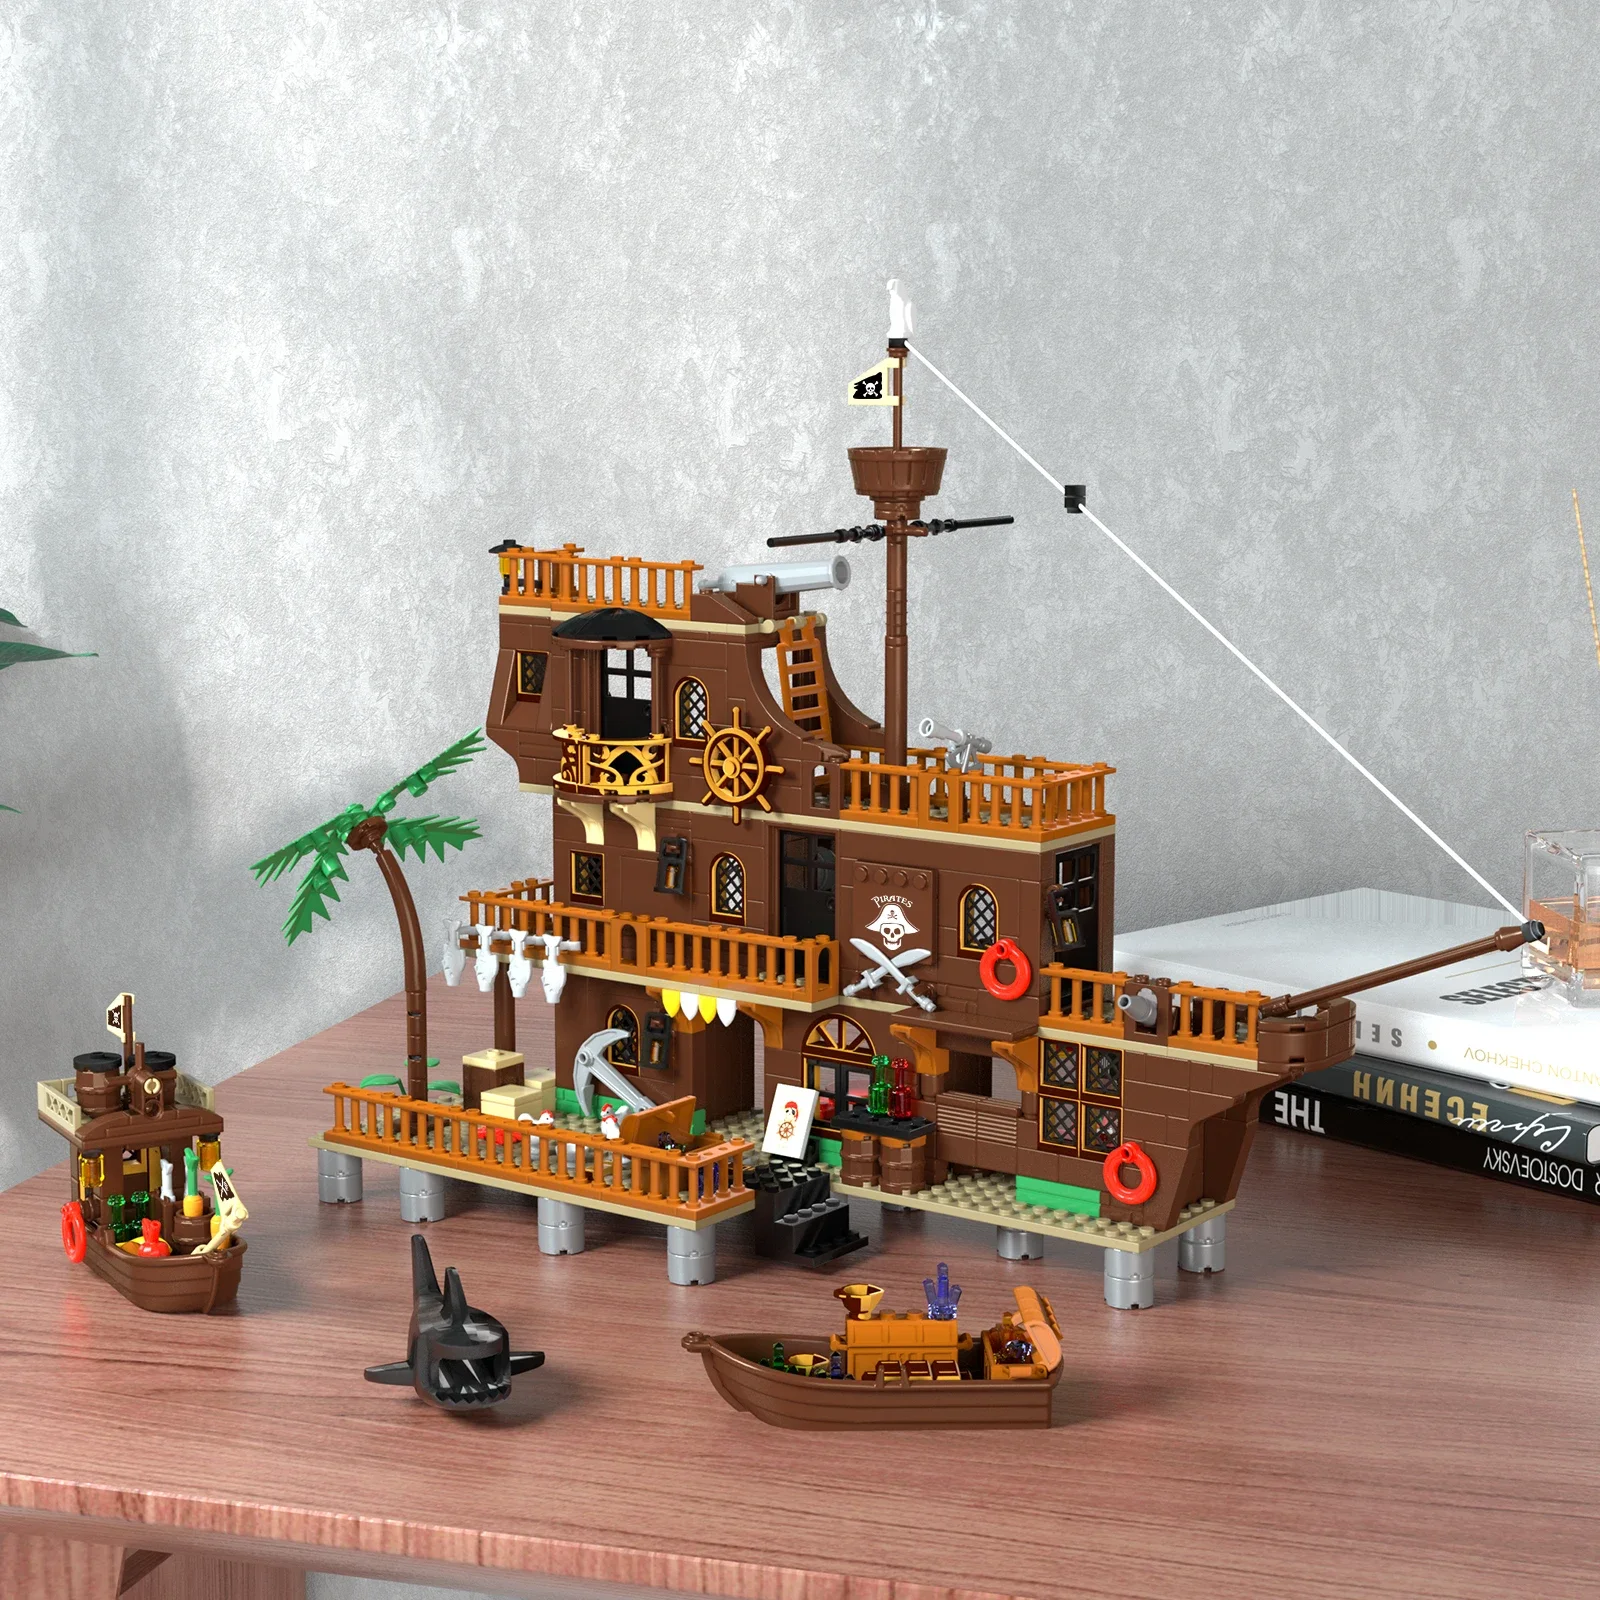 

Пиратский корабль MOC, средневековая Пиратская крепость, замок, набор строительных блоков, модель парусного судна, игрушка, транспортный корабль, здание для детей, подарок